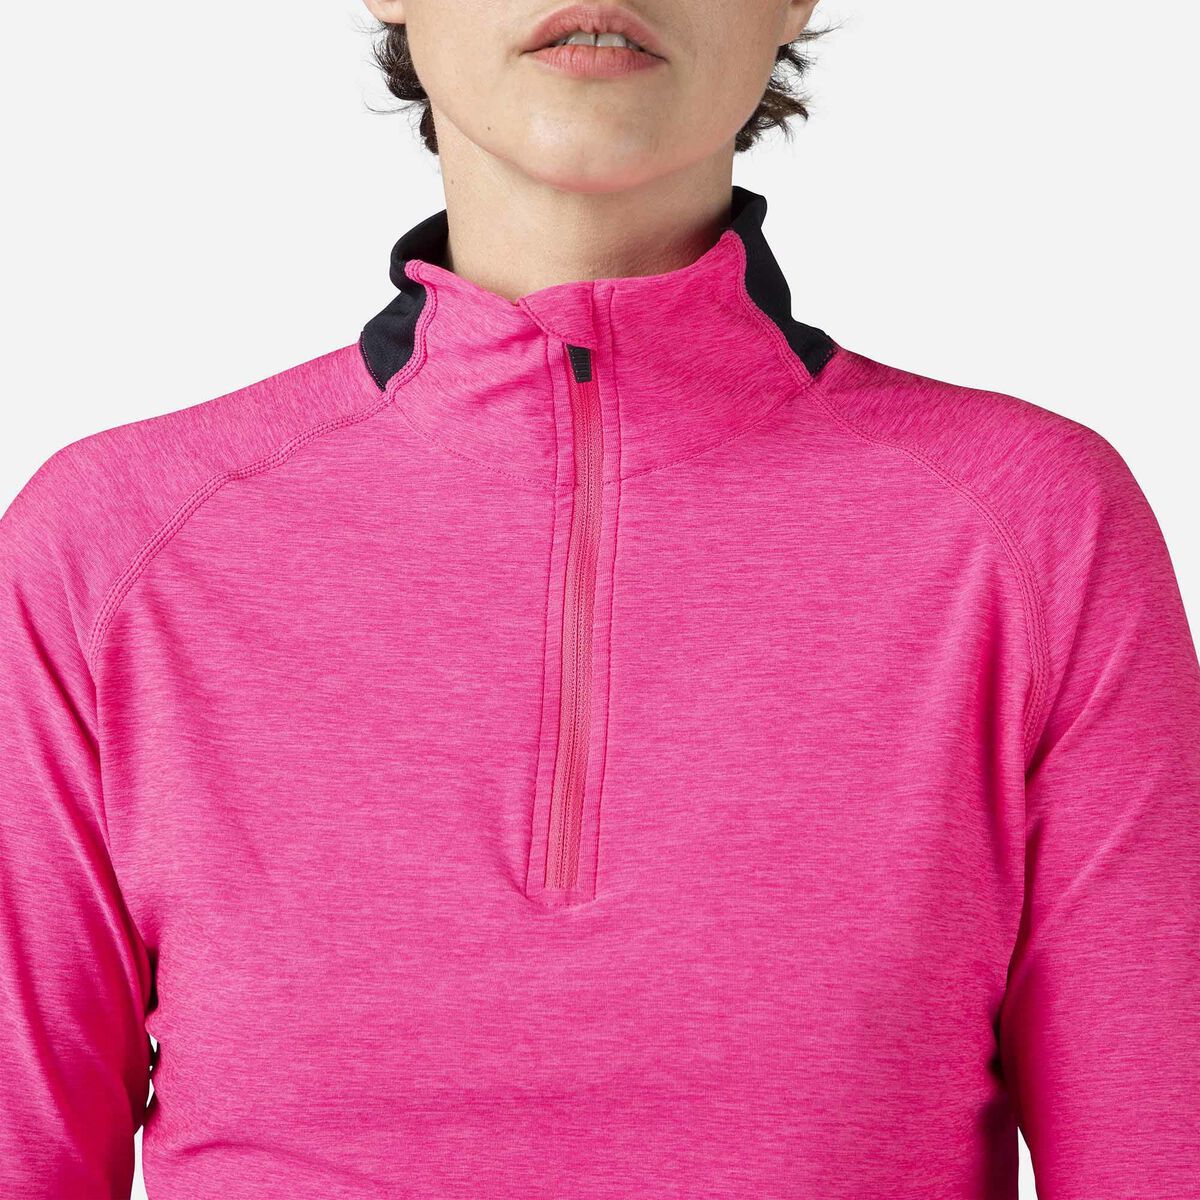 Rossignol Melierter Wanderpullover mit halblangem Reißverschluss für Damen pinkpurple